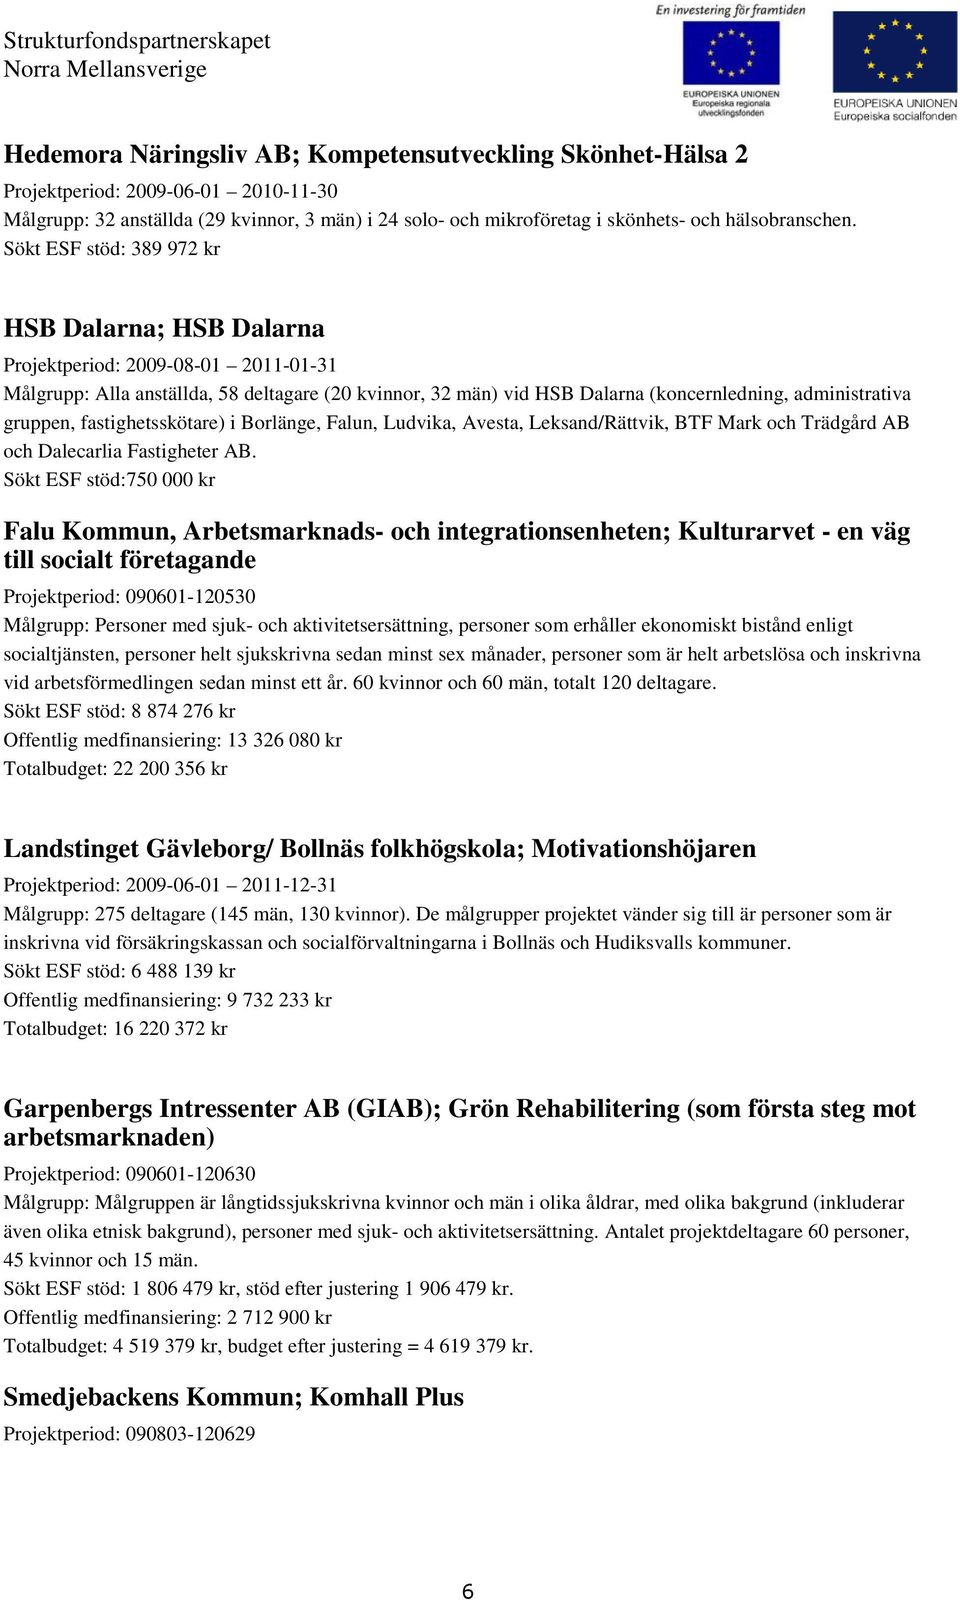 gruppen, fastighetsskötare) i Borlänge, Falun, Ludvika, Avesta, Leksand/Rättvik, BTF Mark och Trädgård AB och Dalecarlia Fastigheter AB.